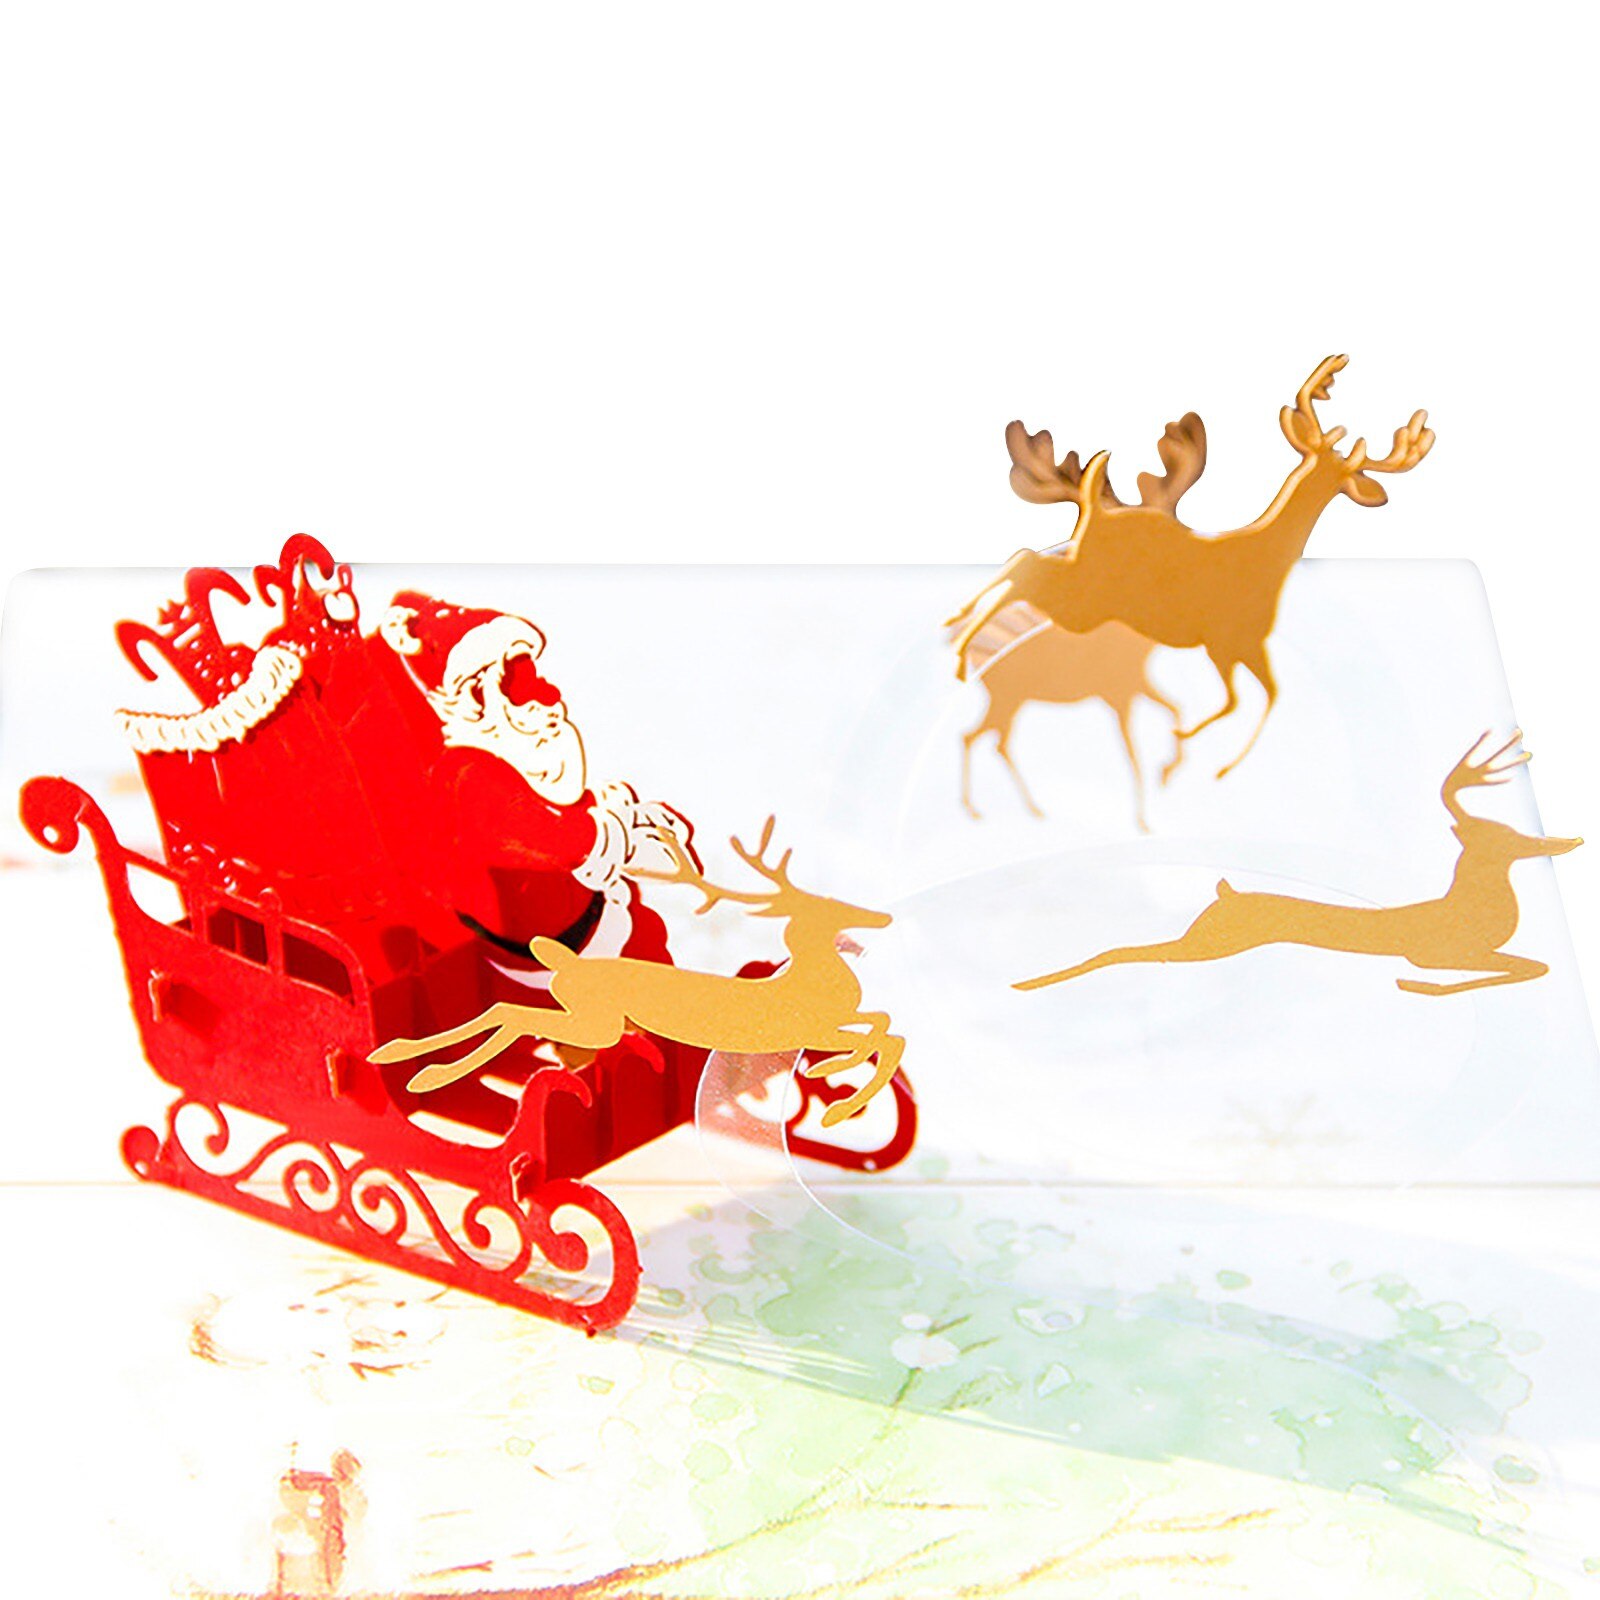 Jul lykønskningskort tredimensionelt 3d håndlavet kort takkort: B